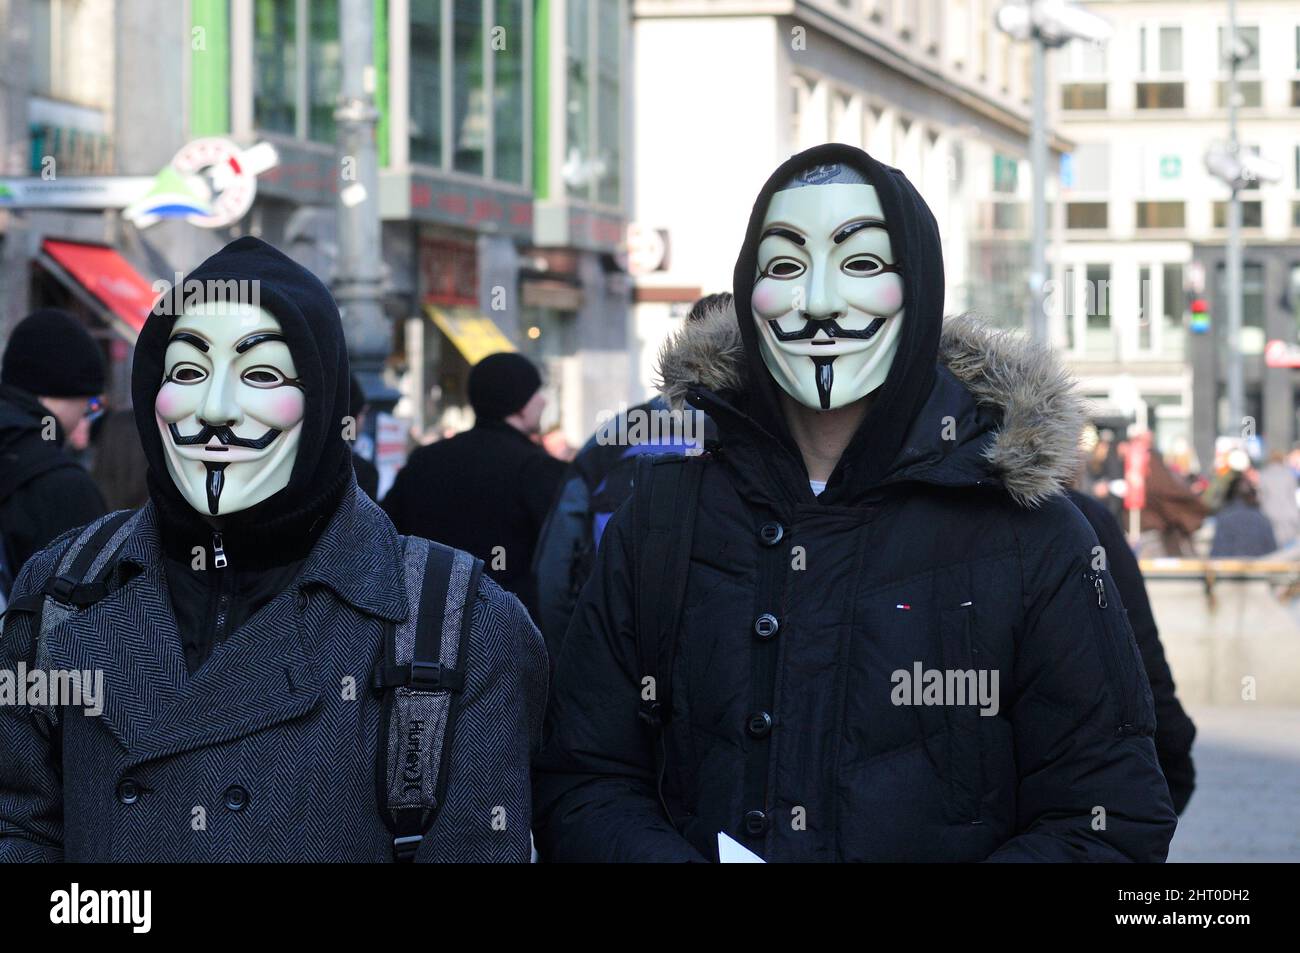 Vienne, Autriche. 28 janvier 2012. Démonstration par Anonymous Autriche. Internet collective d'Autriche Banque D'Images